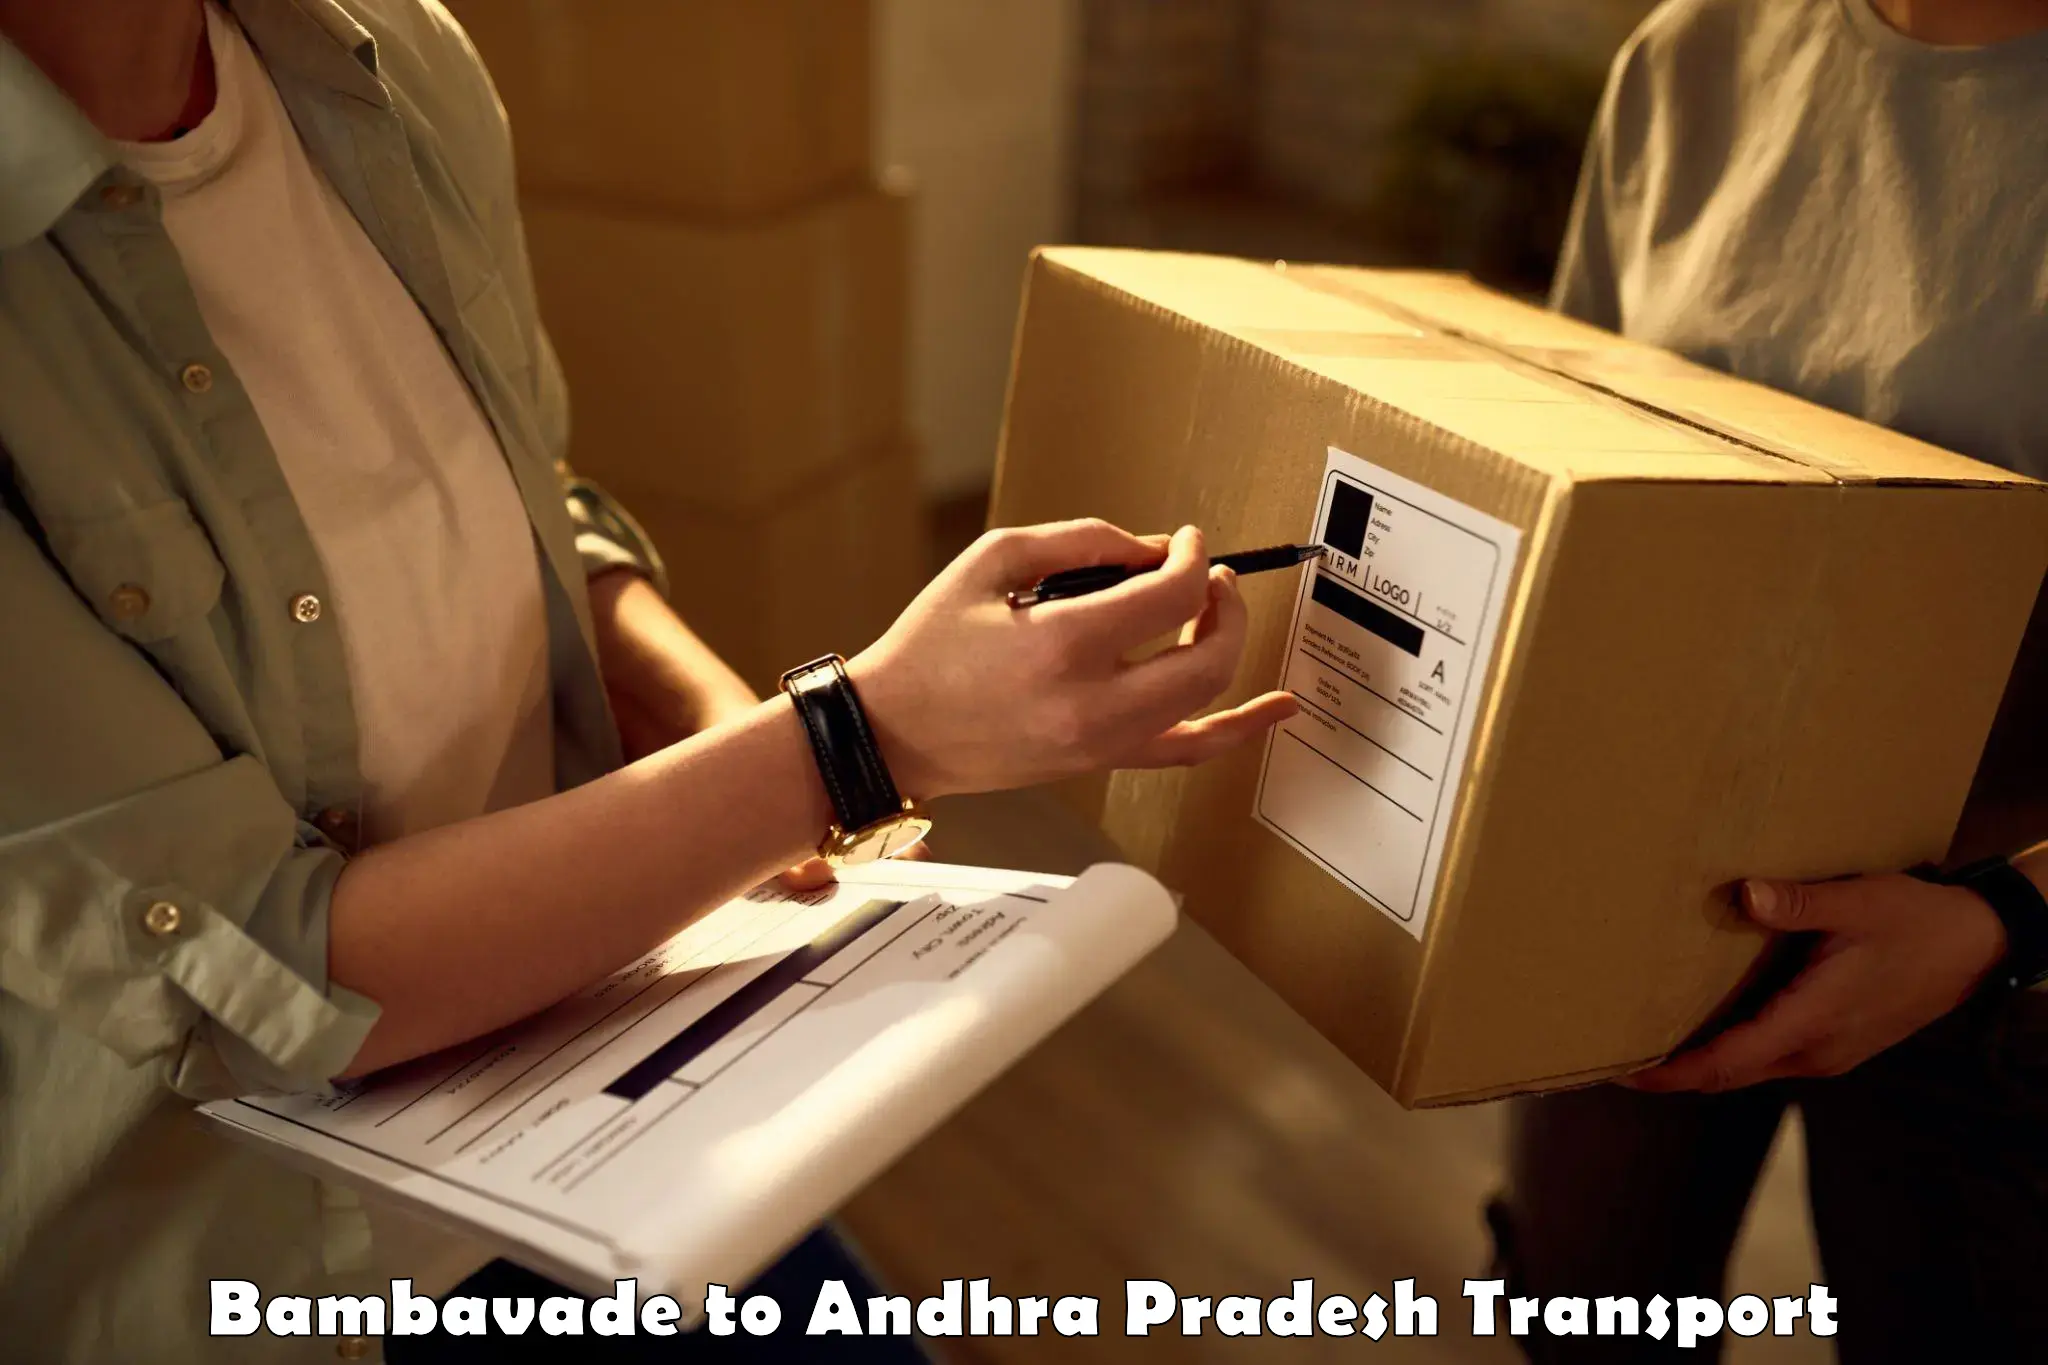 Furniture transport service Bambavade to Andhra Pradesh